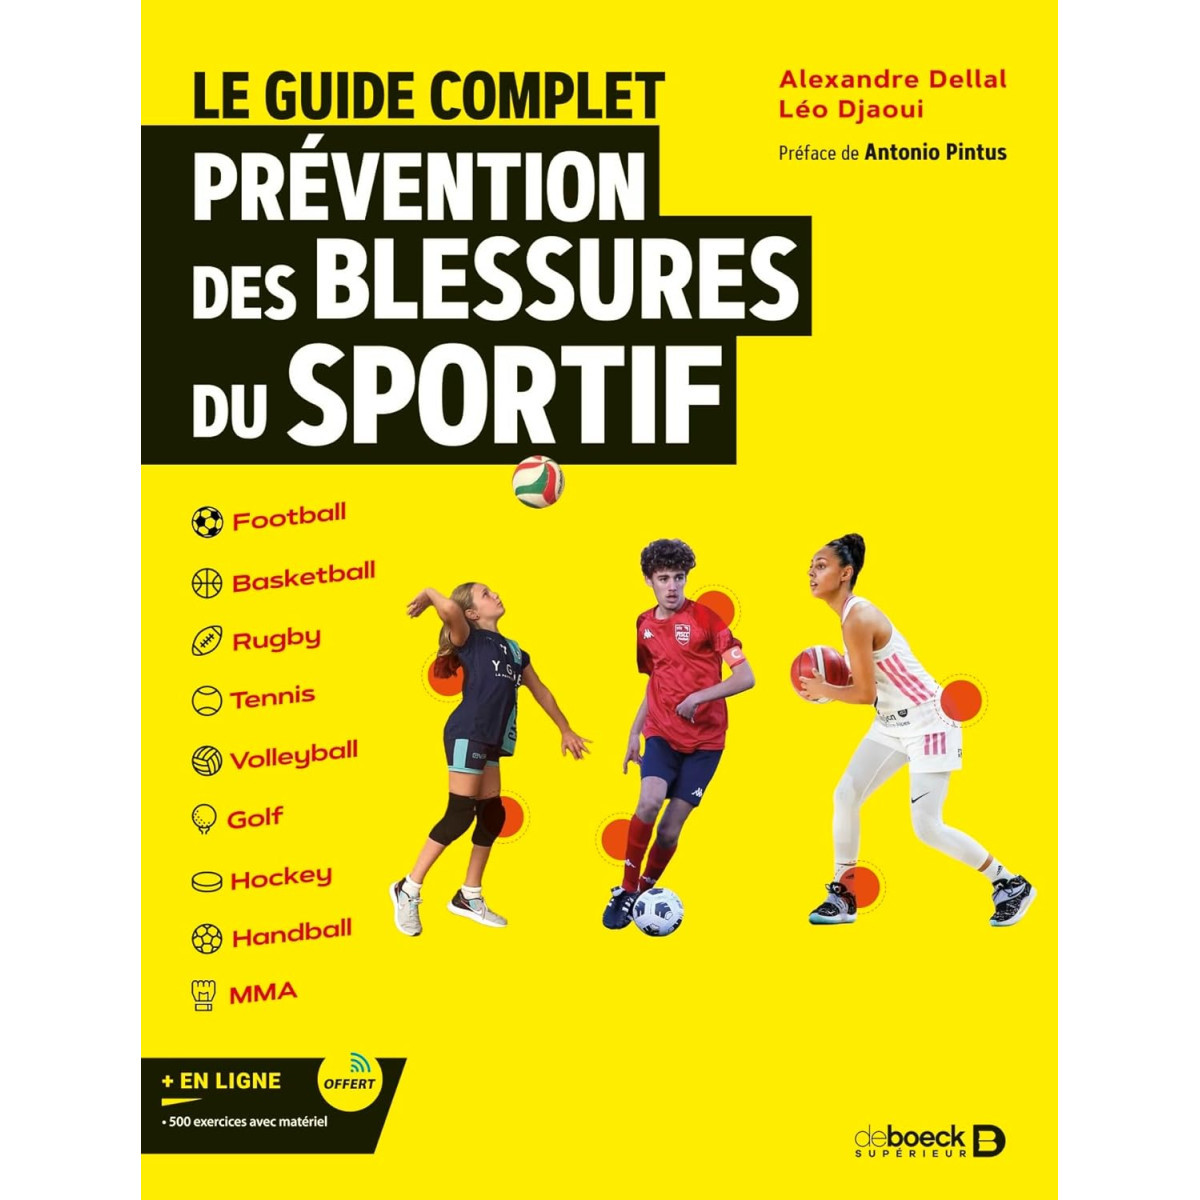 Le guide complet de la prévention des blessures dans le sport